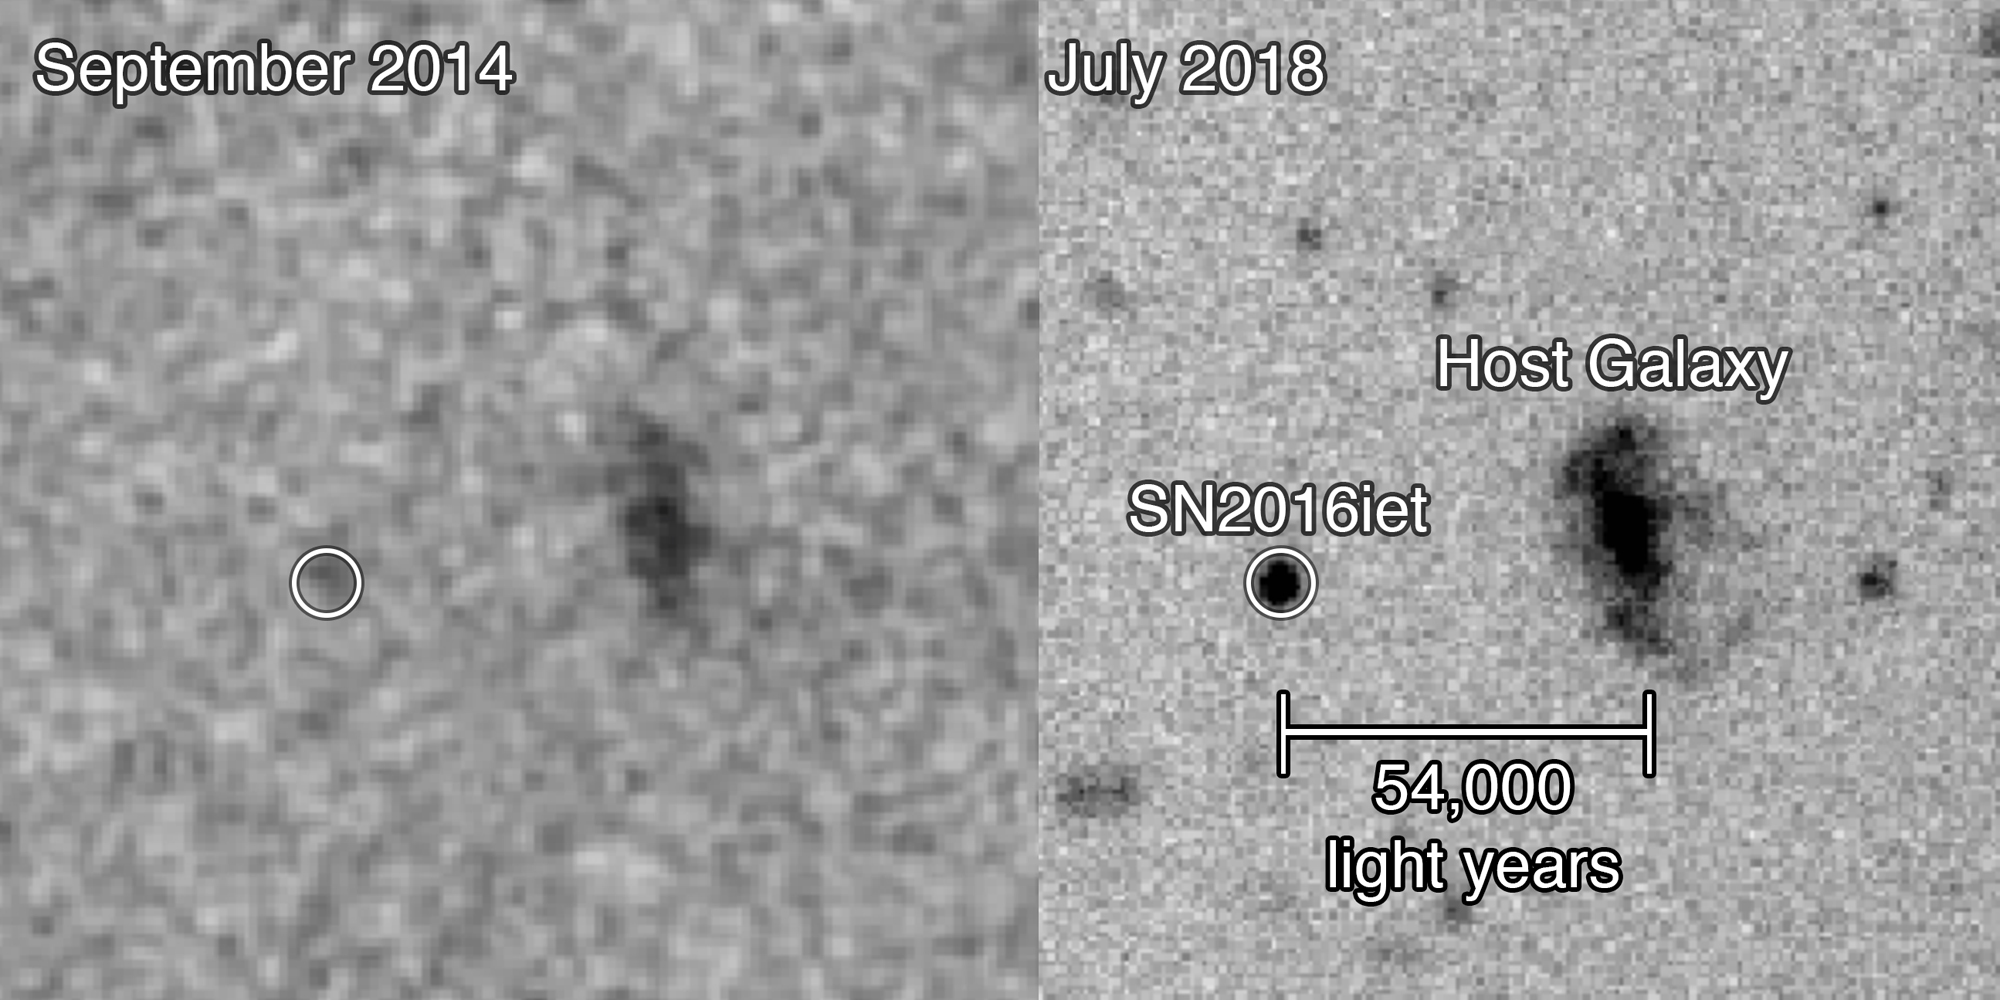 L'INCROYABLE supernova que les chercheurs de la NASA ont été stupéfaits par l'image